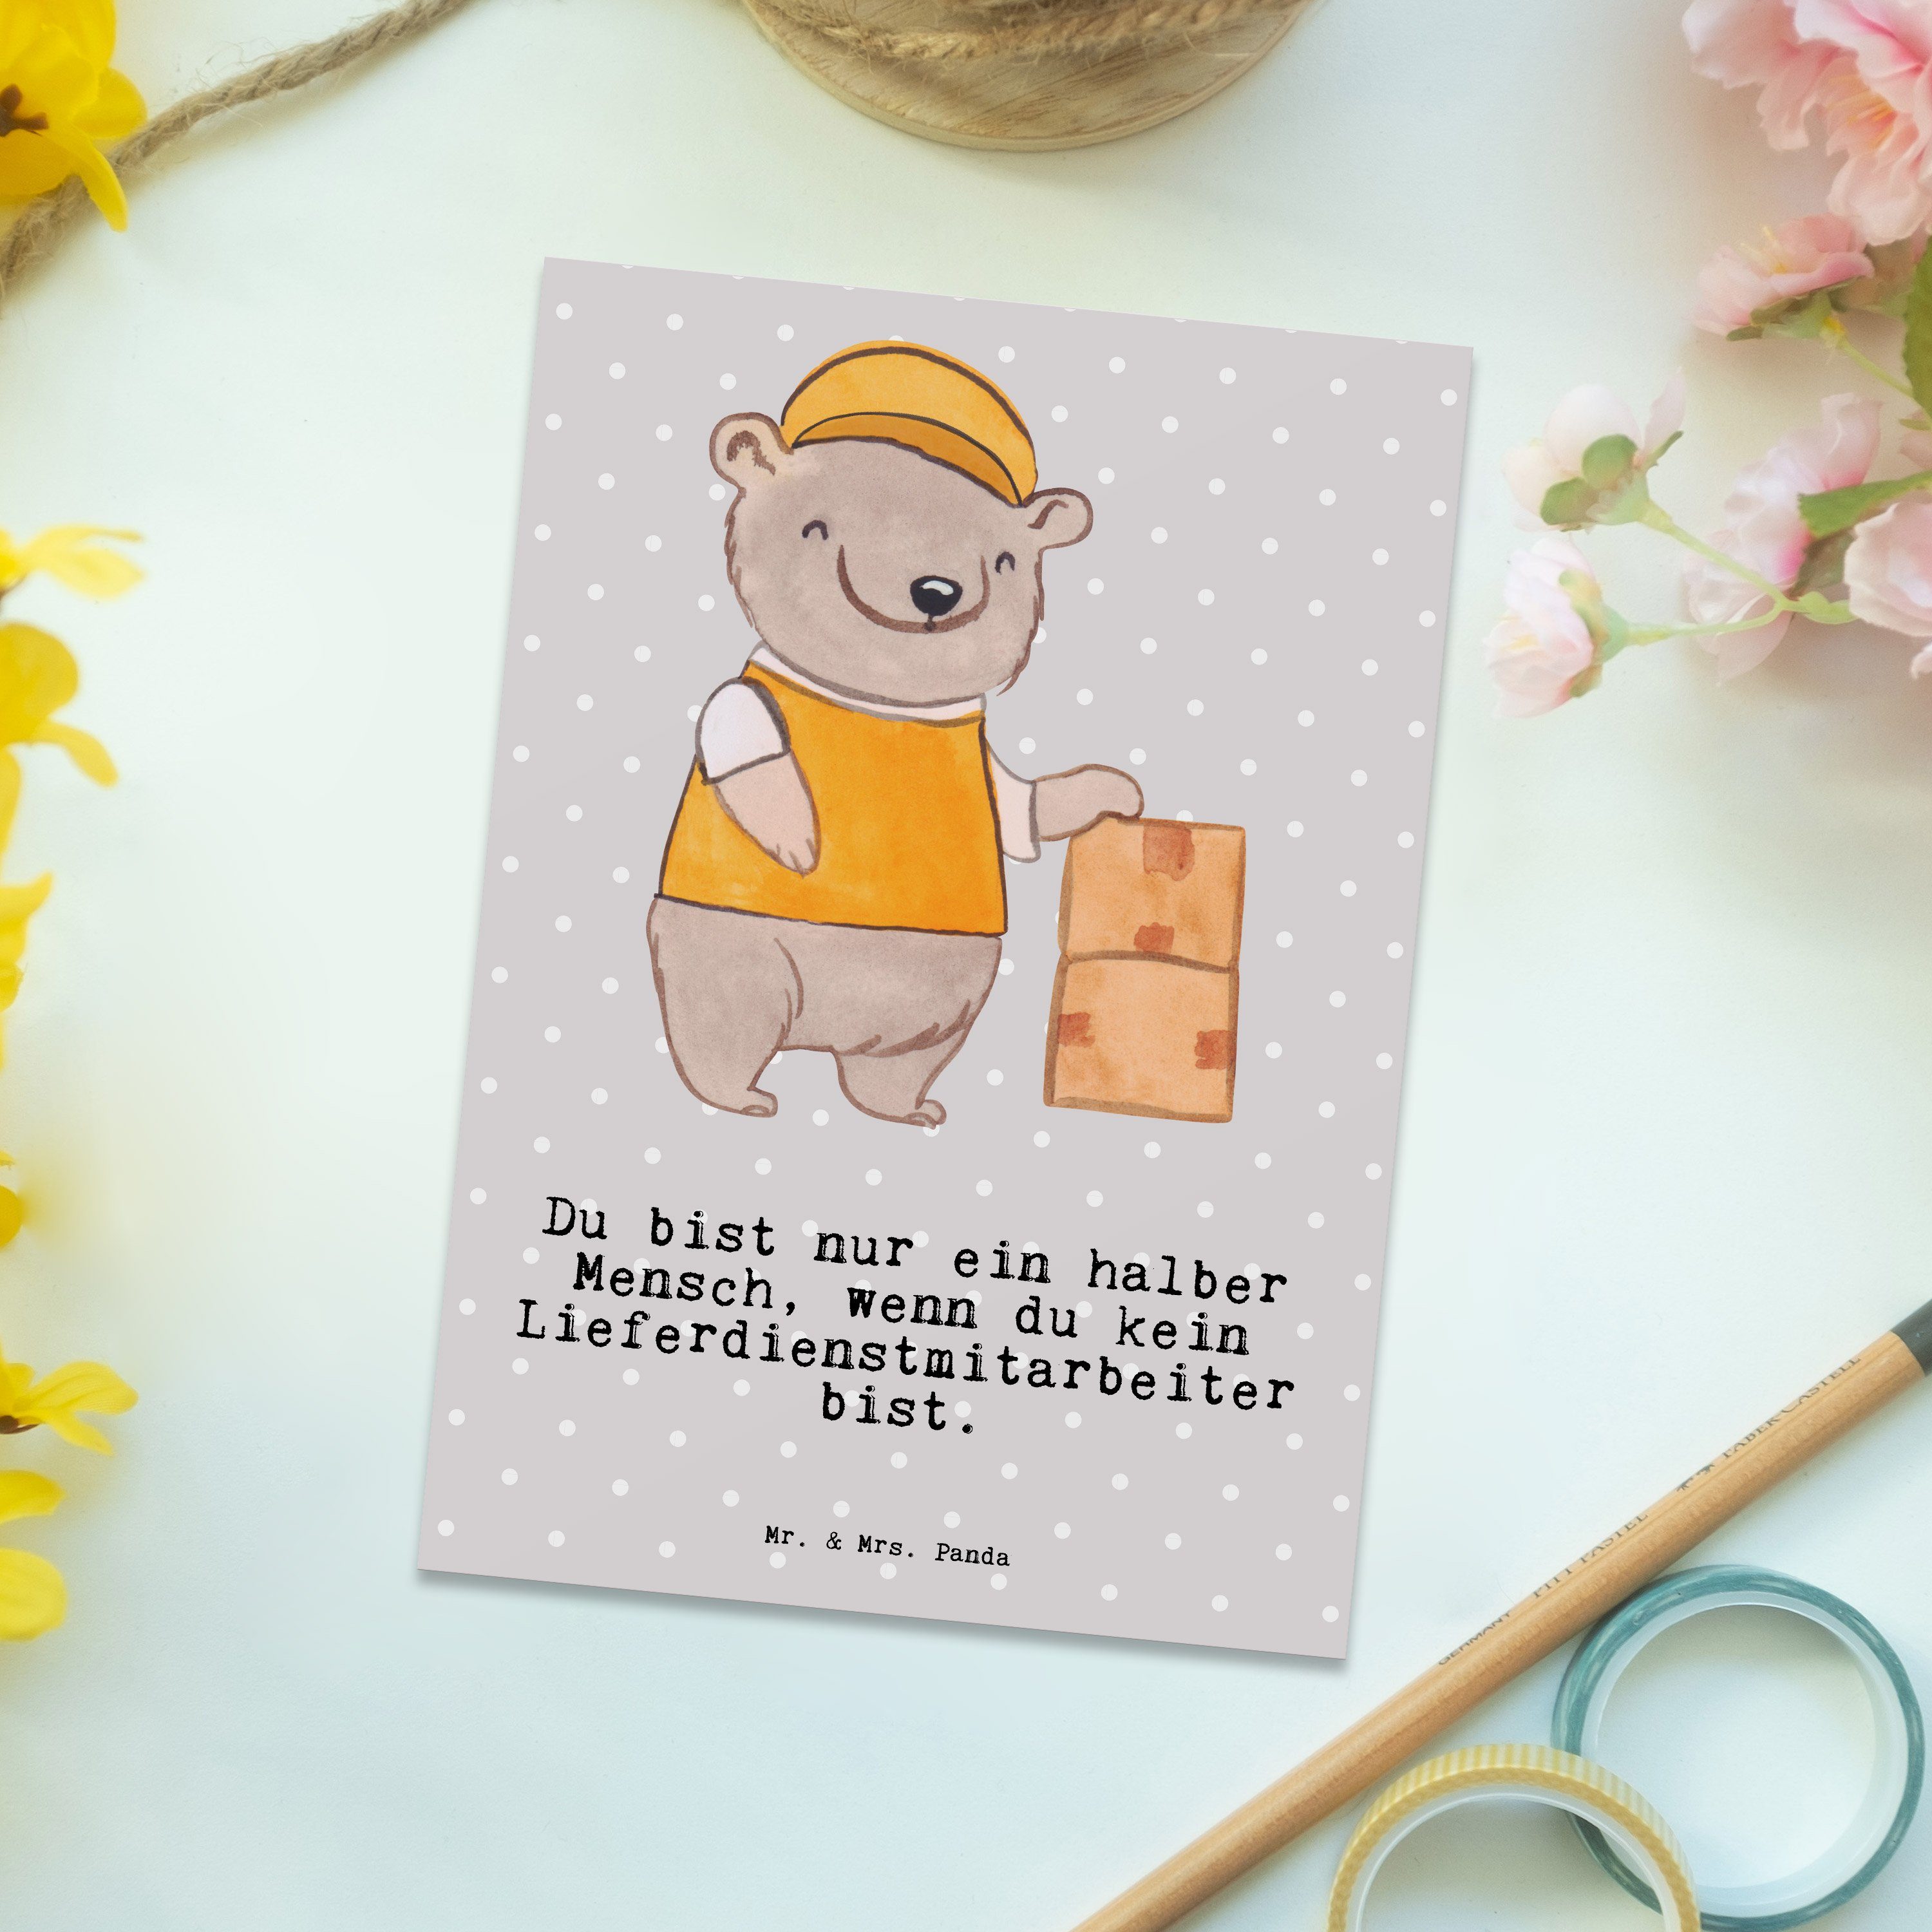 Panda Grau Postkarte Herz Geschenk, mit Mrs. & Pastell Geburtsta - Mr. Lieferdienstmitarbeiter -